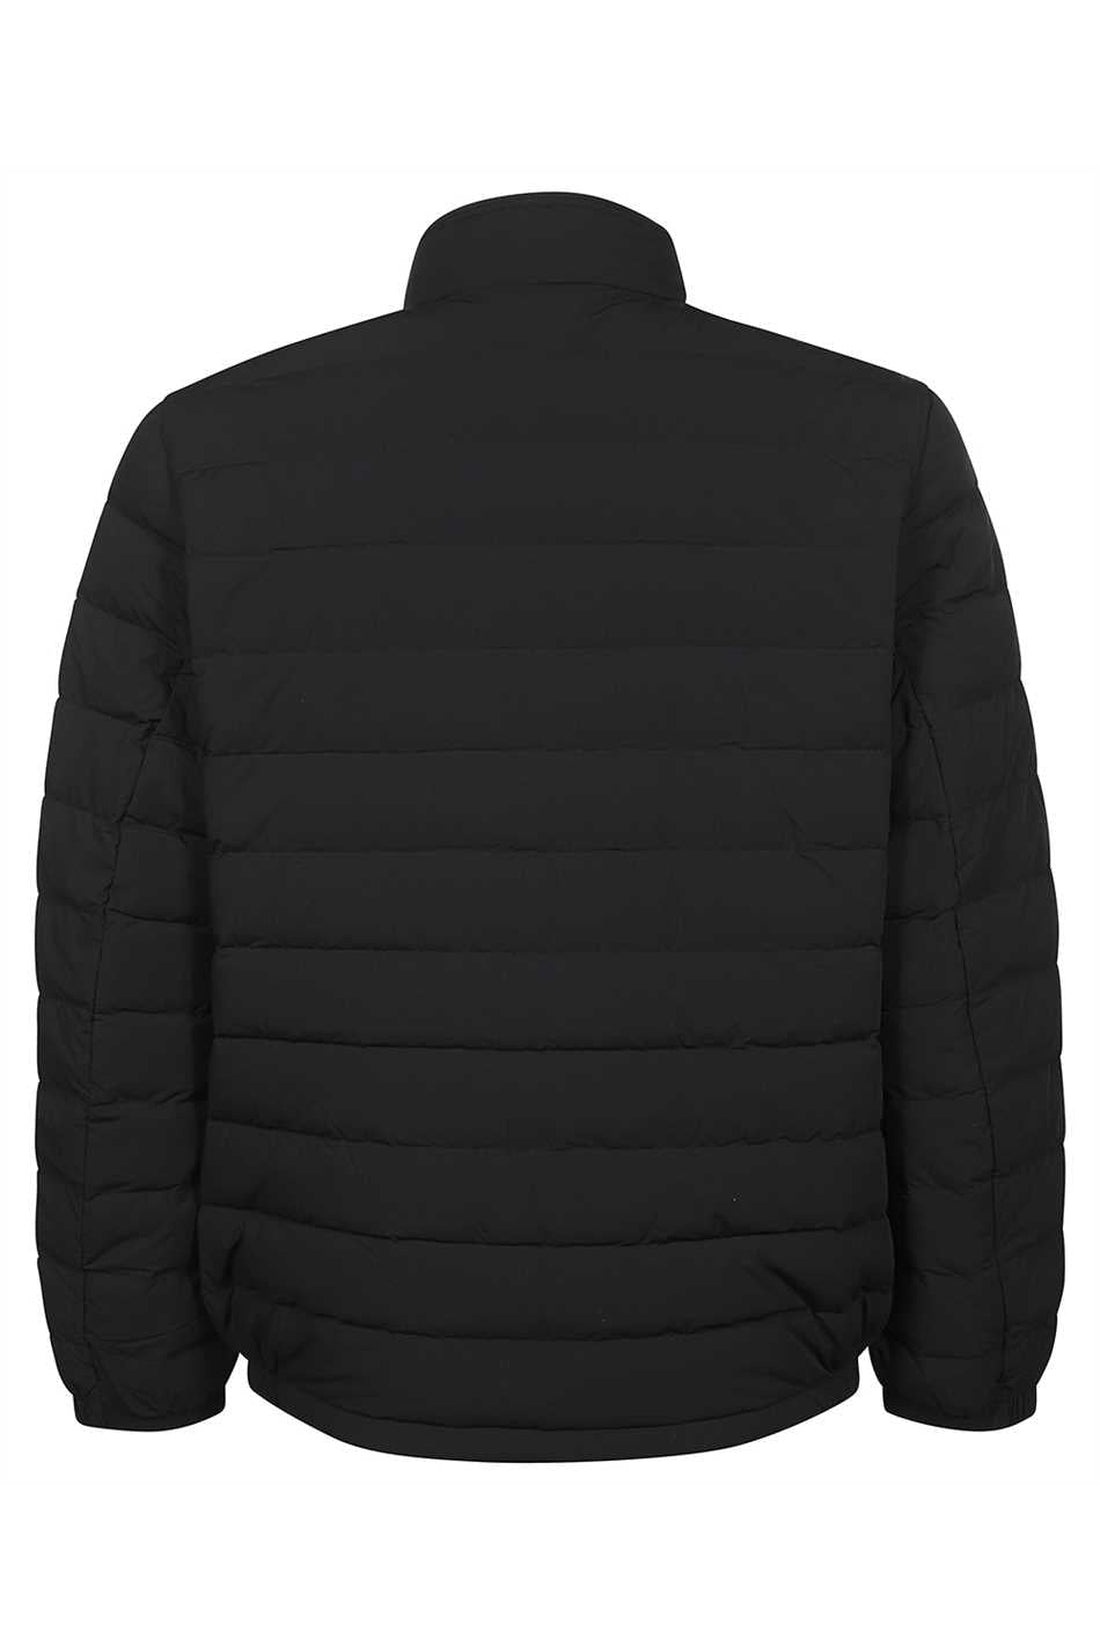 Woolrich-OUTLET-SALE-Sundance nylon down jacket-ARCHIVIST